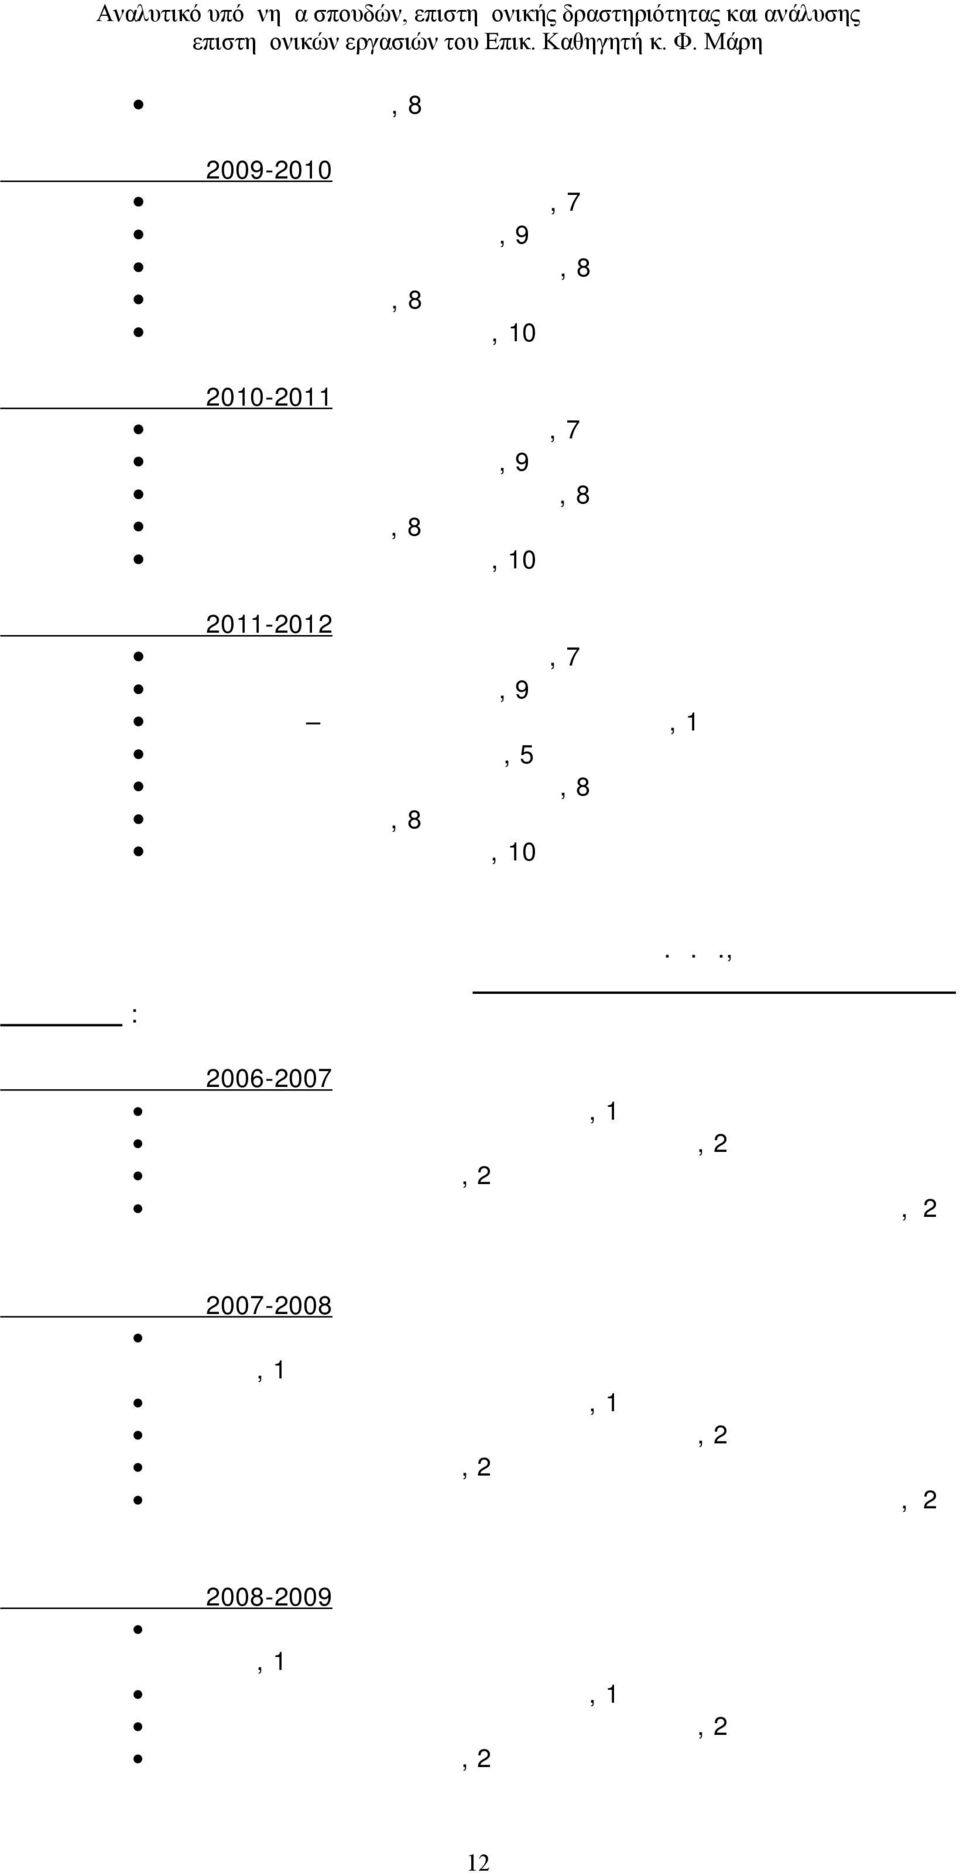 Ορεινών Υδάτων ΙΙ, 8 ου εξαμήνου Υδροπληροφορική, 8 ου εξαμήνου Φυτοτεχνικές Διευθετήσεις, 10 ου εξαμήνου Ακαδημαϊκό έτος 2011-2012 Διευθετήσεις Ορεινών Υδάτων Ι, 7 ου εξαμήνου Τεχνολογία